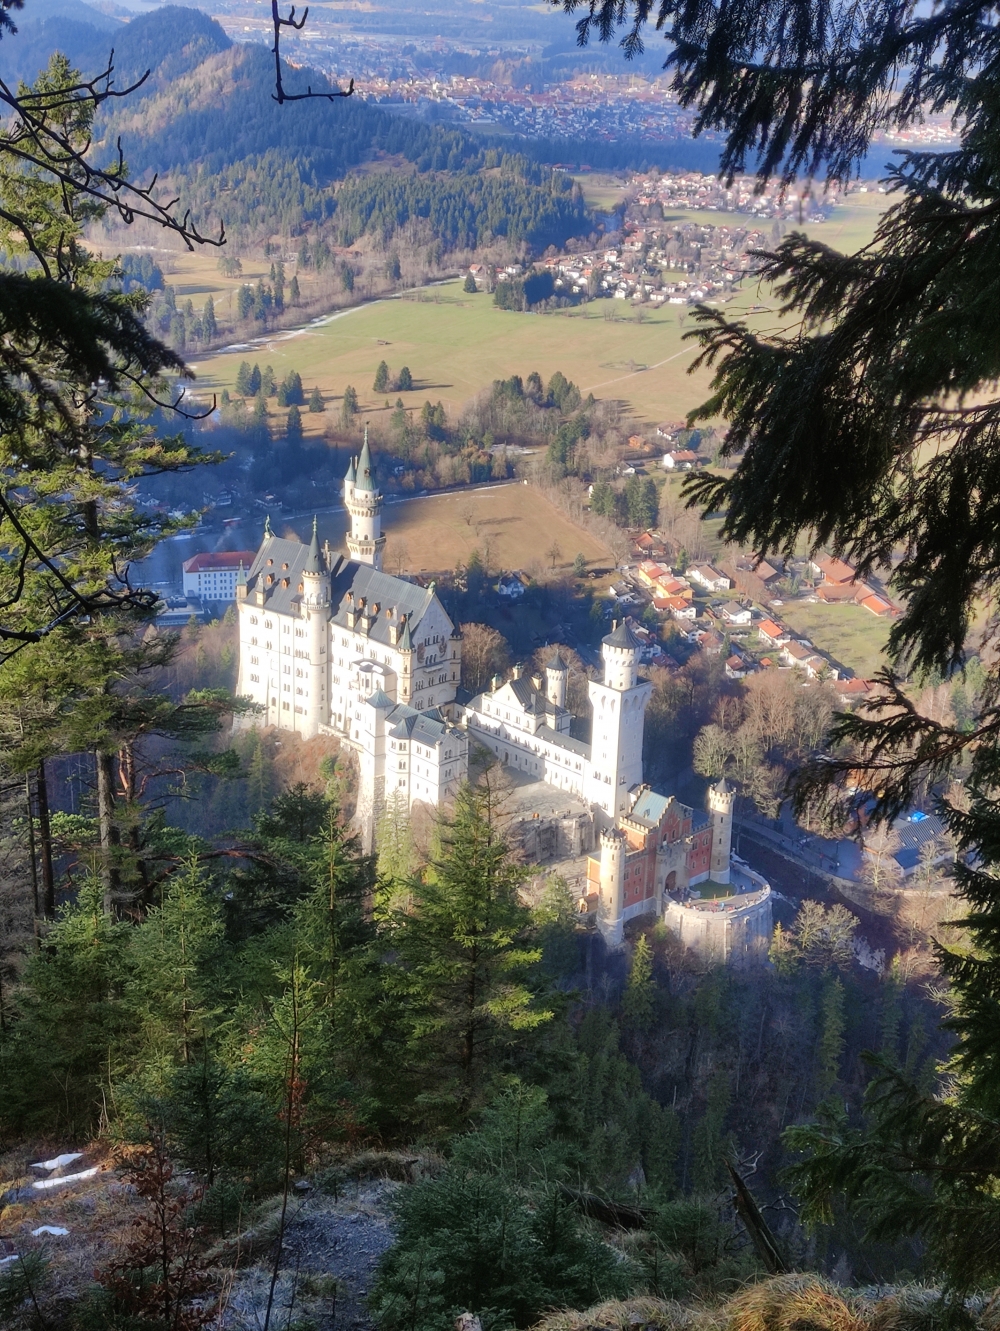 Aussicht am Abgrund: Blick auf Schloss Neuschwanstein